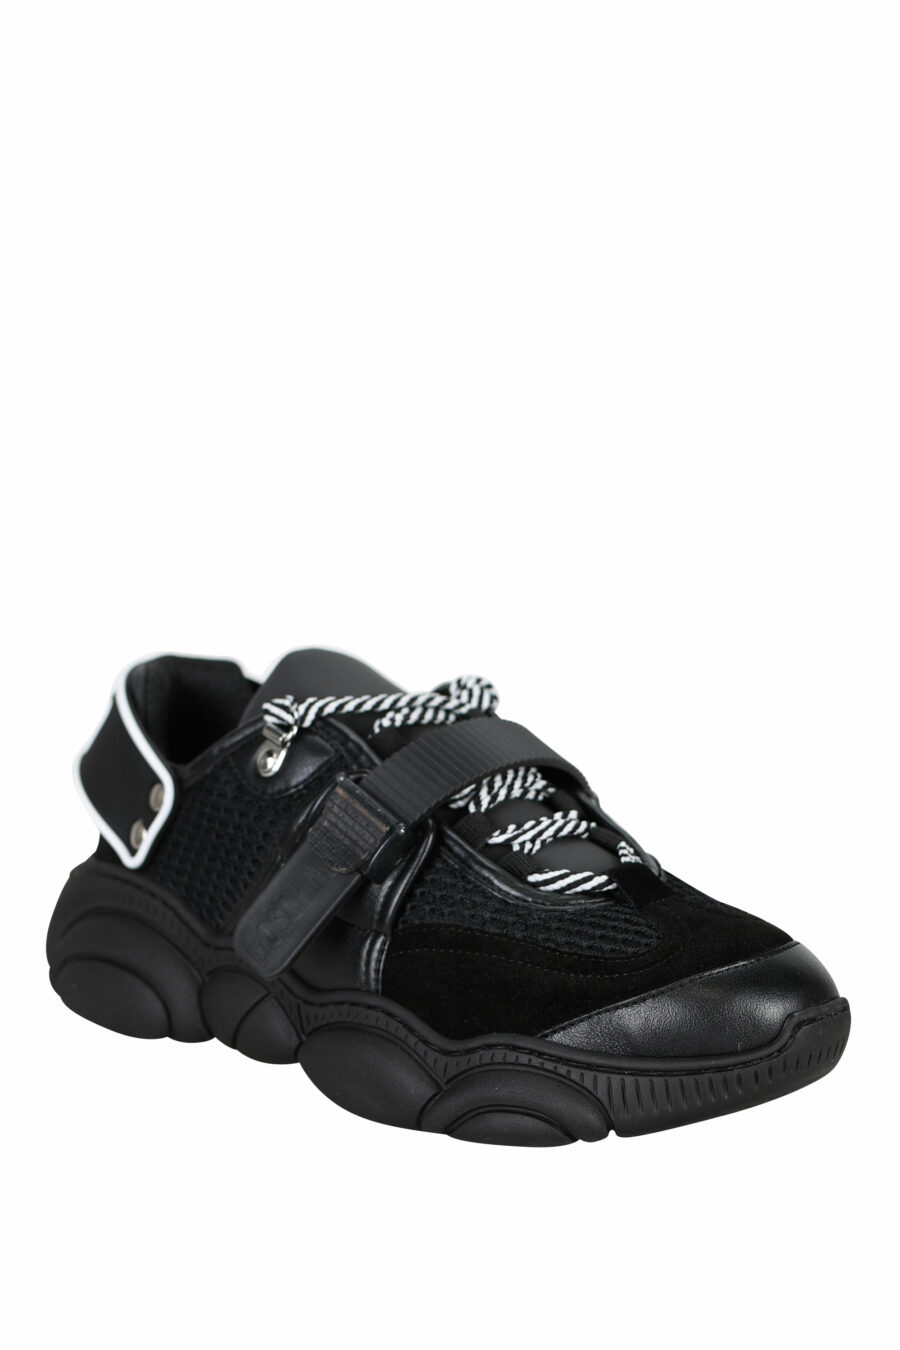 Zapatillas negras con cordones y velcro y logo de goma - 8054653226388 1